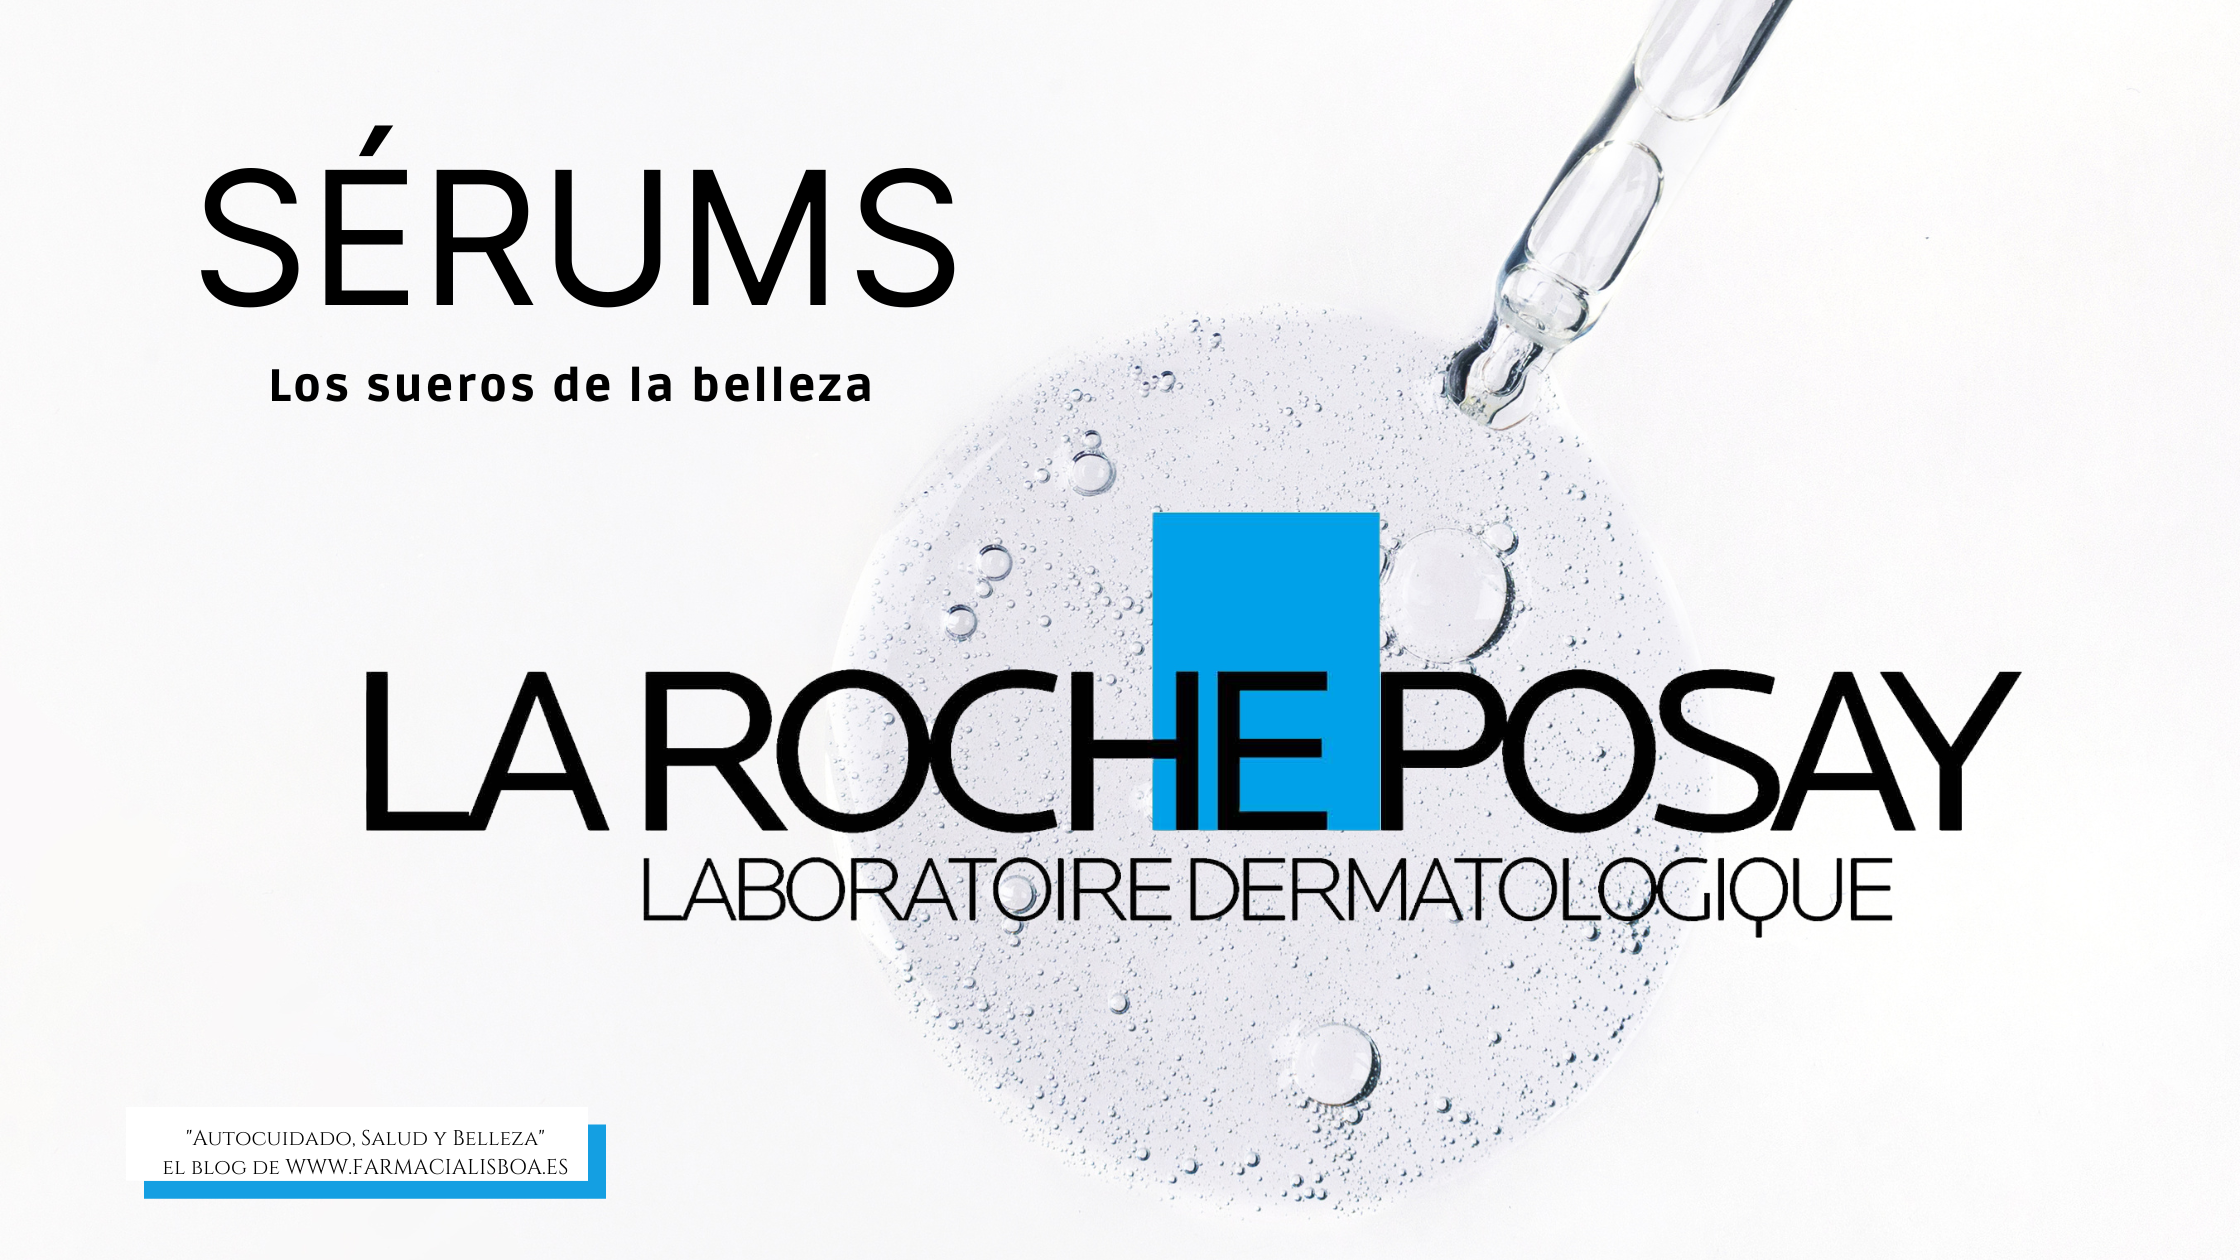 Descubre los serums La Roche Posay